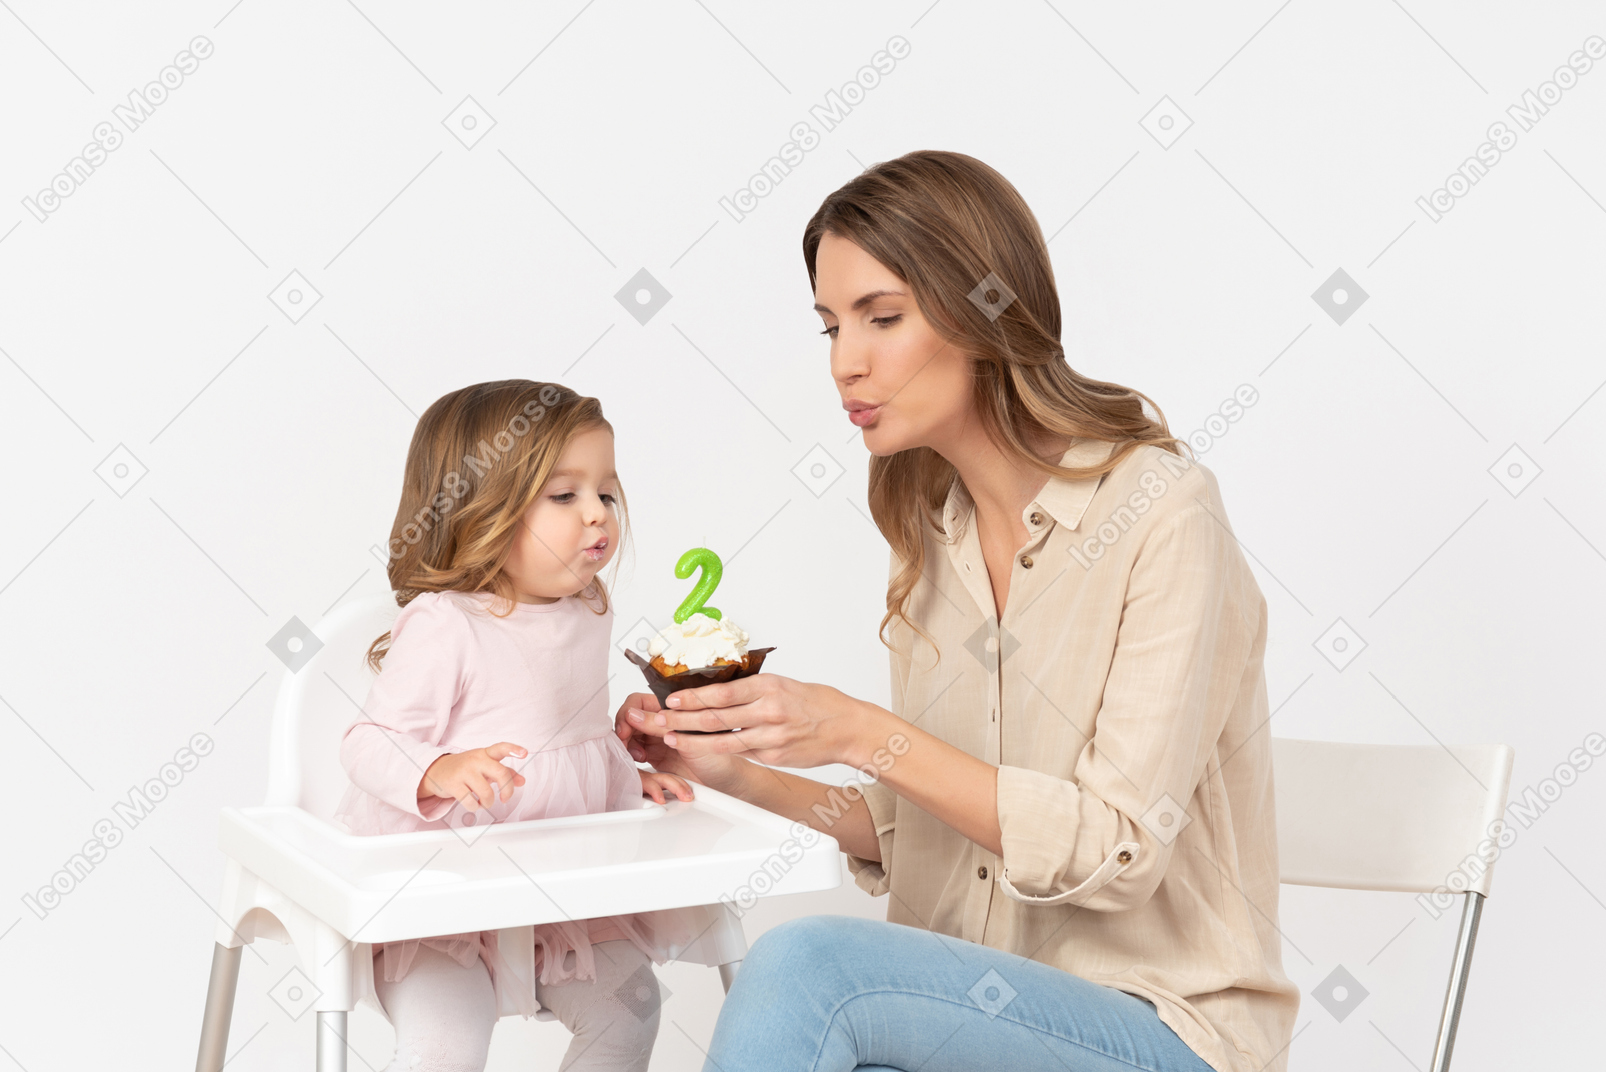 Bambina che spegne una candela mentre sua madre tiene in mano una torta di compleanno